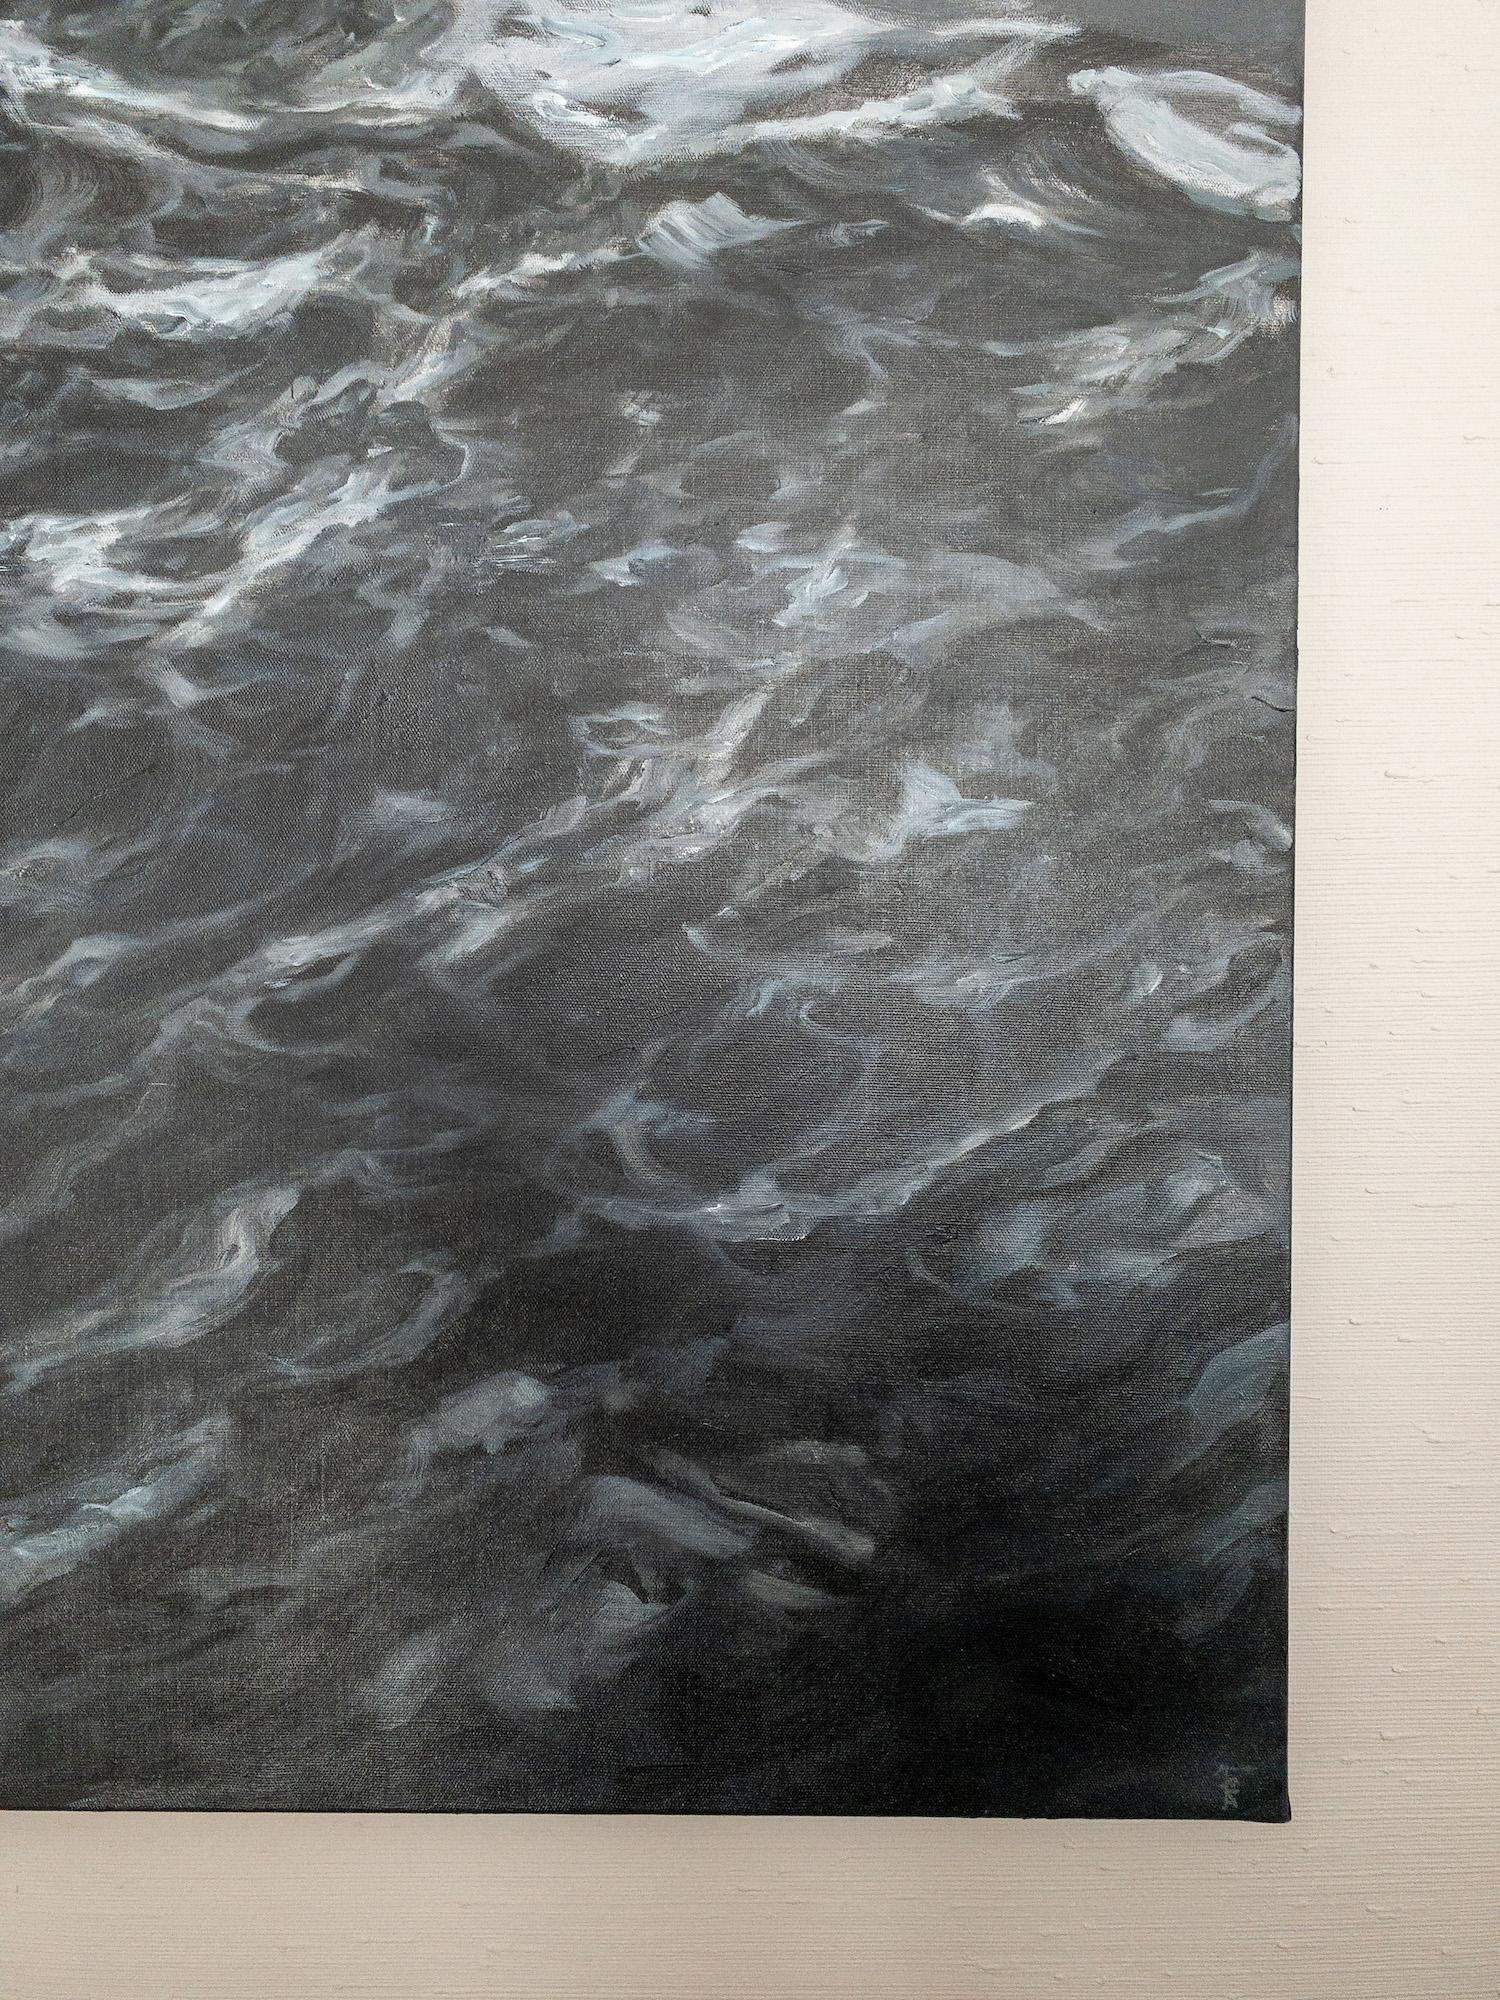 The Outburst by Franco Salas Borquez - Contemporary oil painting, seascape, wave For Sale 6